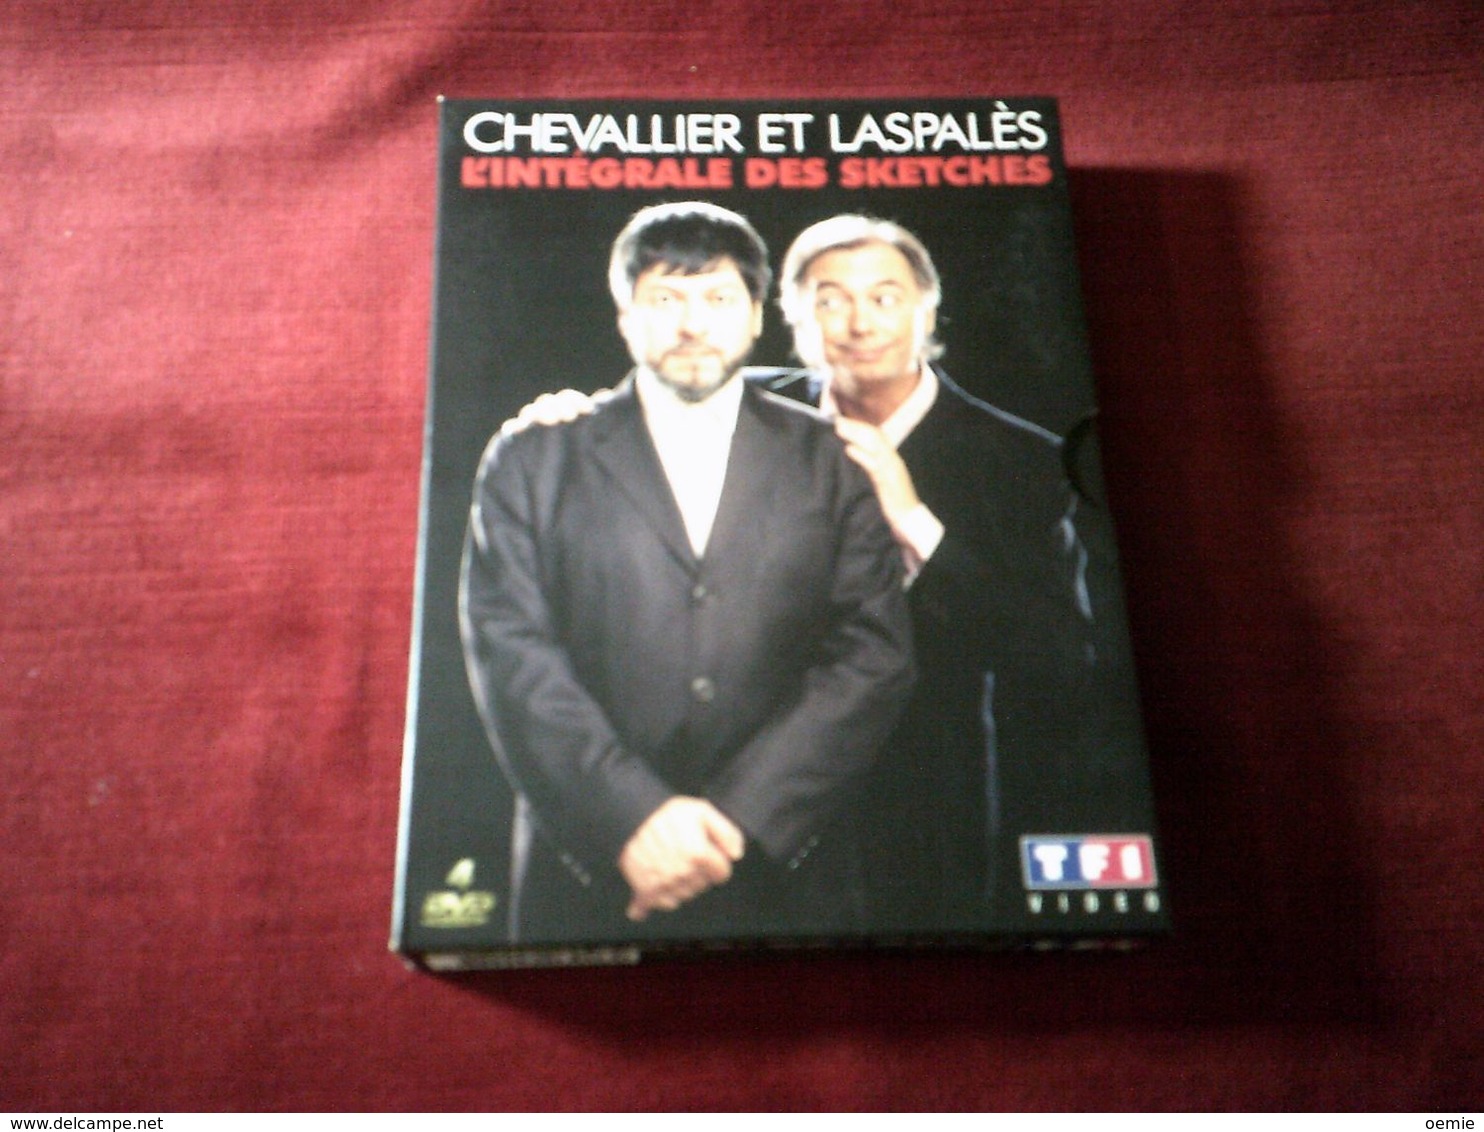 Chevalier Et Laspales  4  DVD  L'INTEGRALE DES SKETCHES - Konzerte & Musik